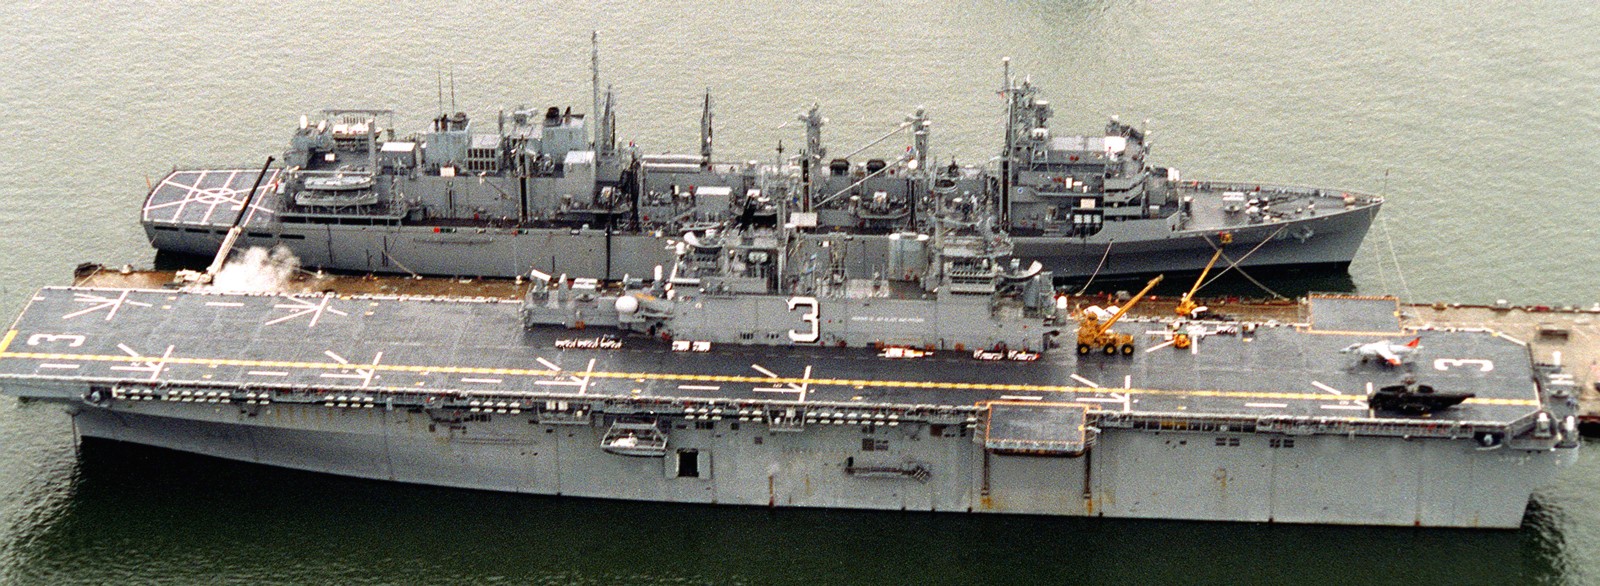 lhd-3 uss kearsarge wasp class amphibious assault ship landing dock us navy 24